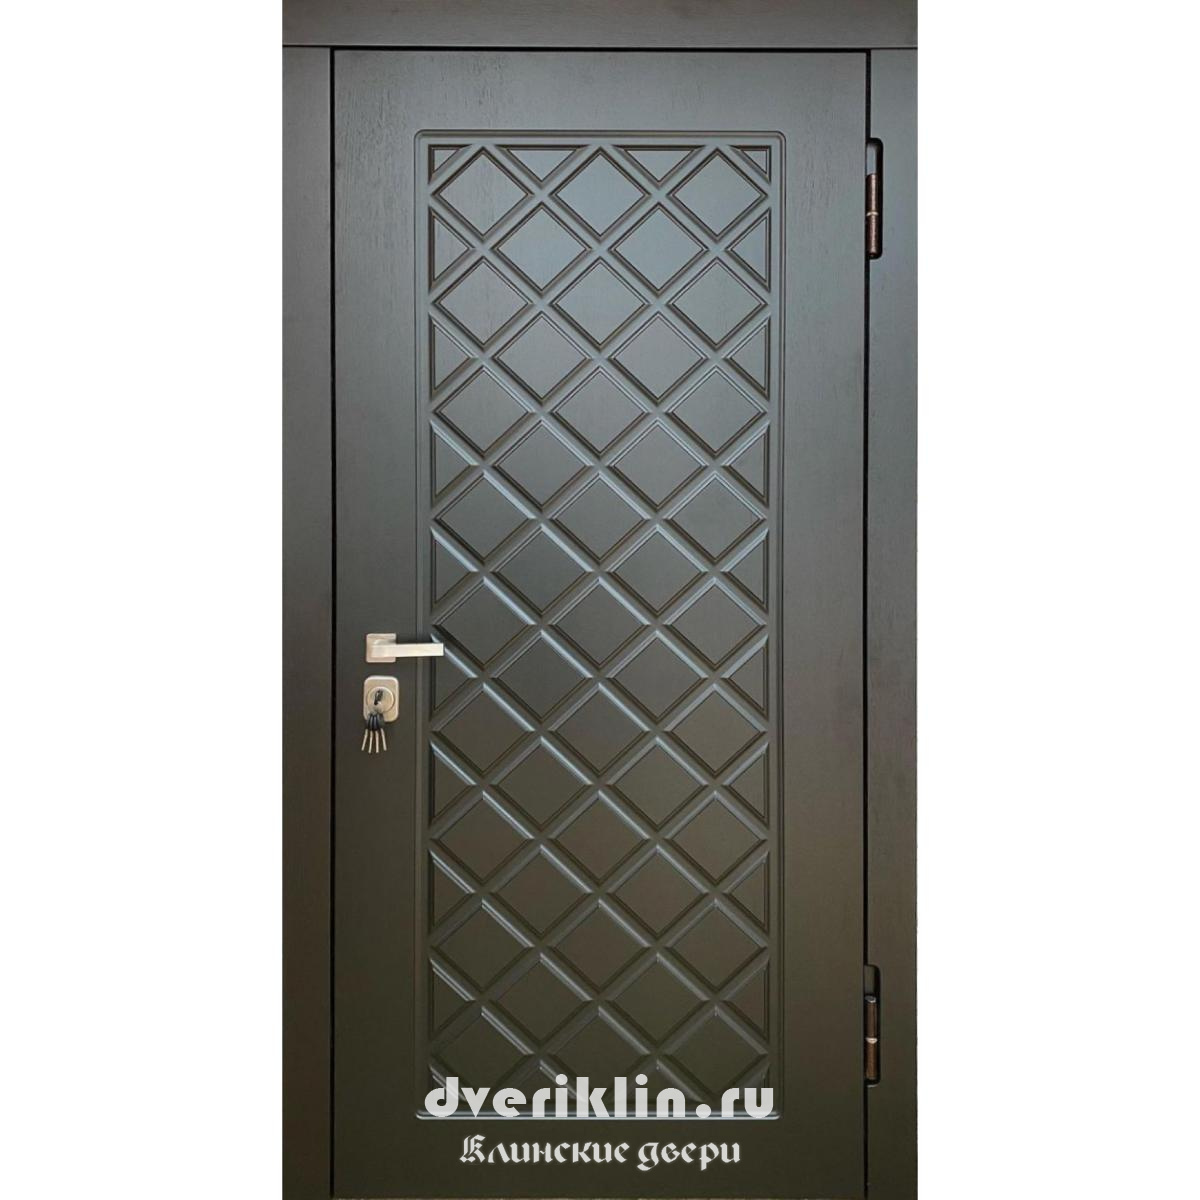 Дверь в коттедж MKD-24 (В коттедж)